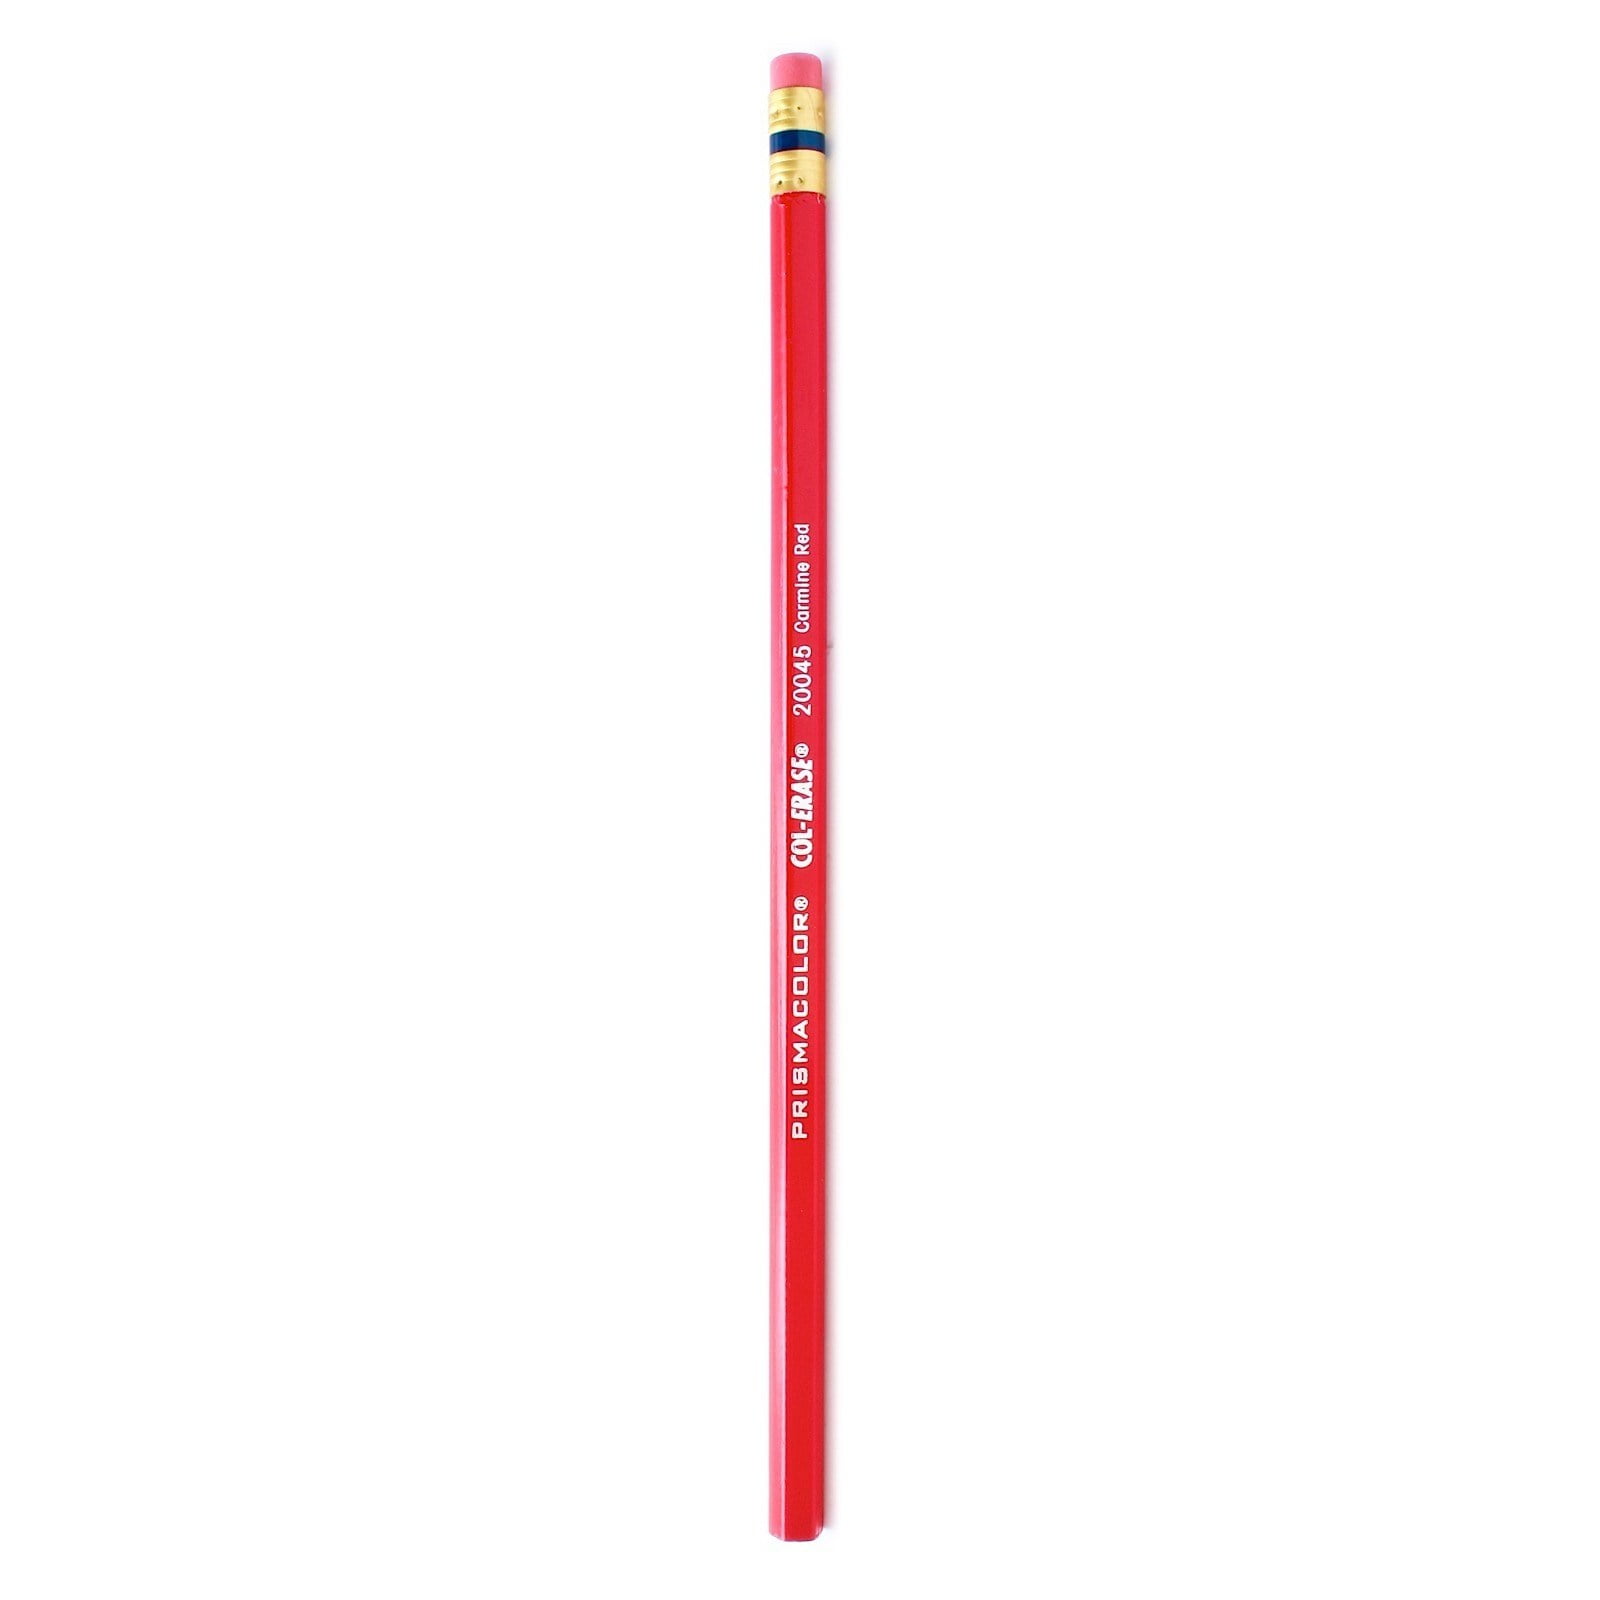 Prismacolor Col-Erase Erasable Colored Pencil, 12-Count, Red (20045)